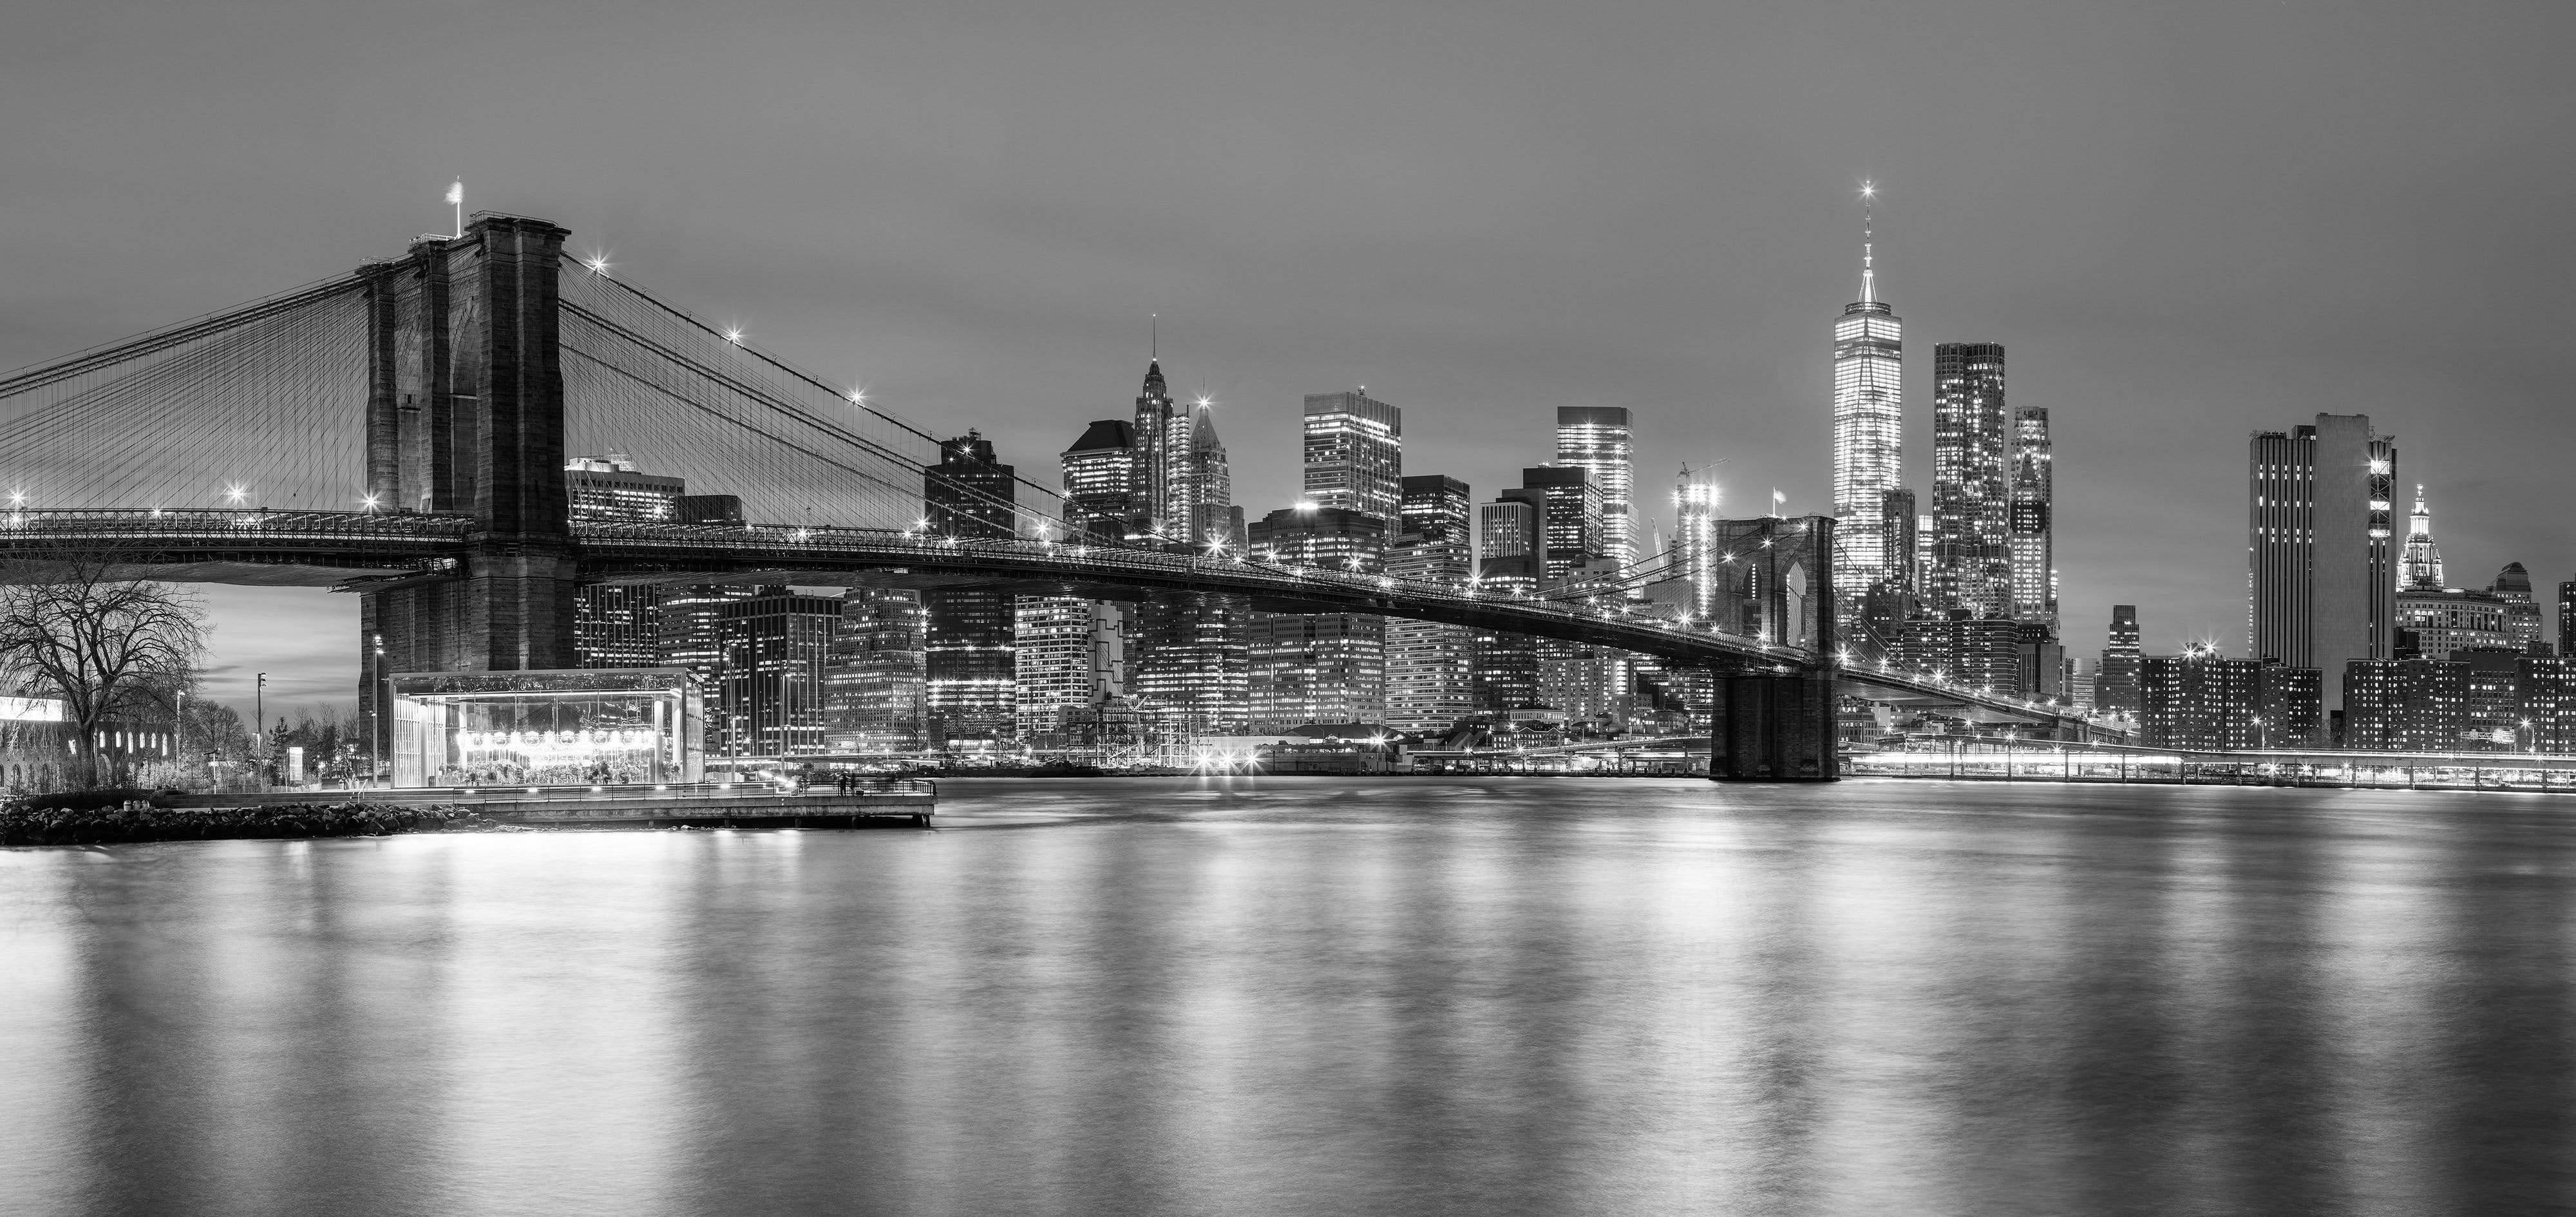 B&W Brooklyn Bridge at Night